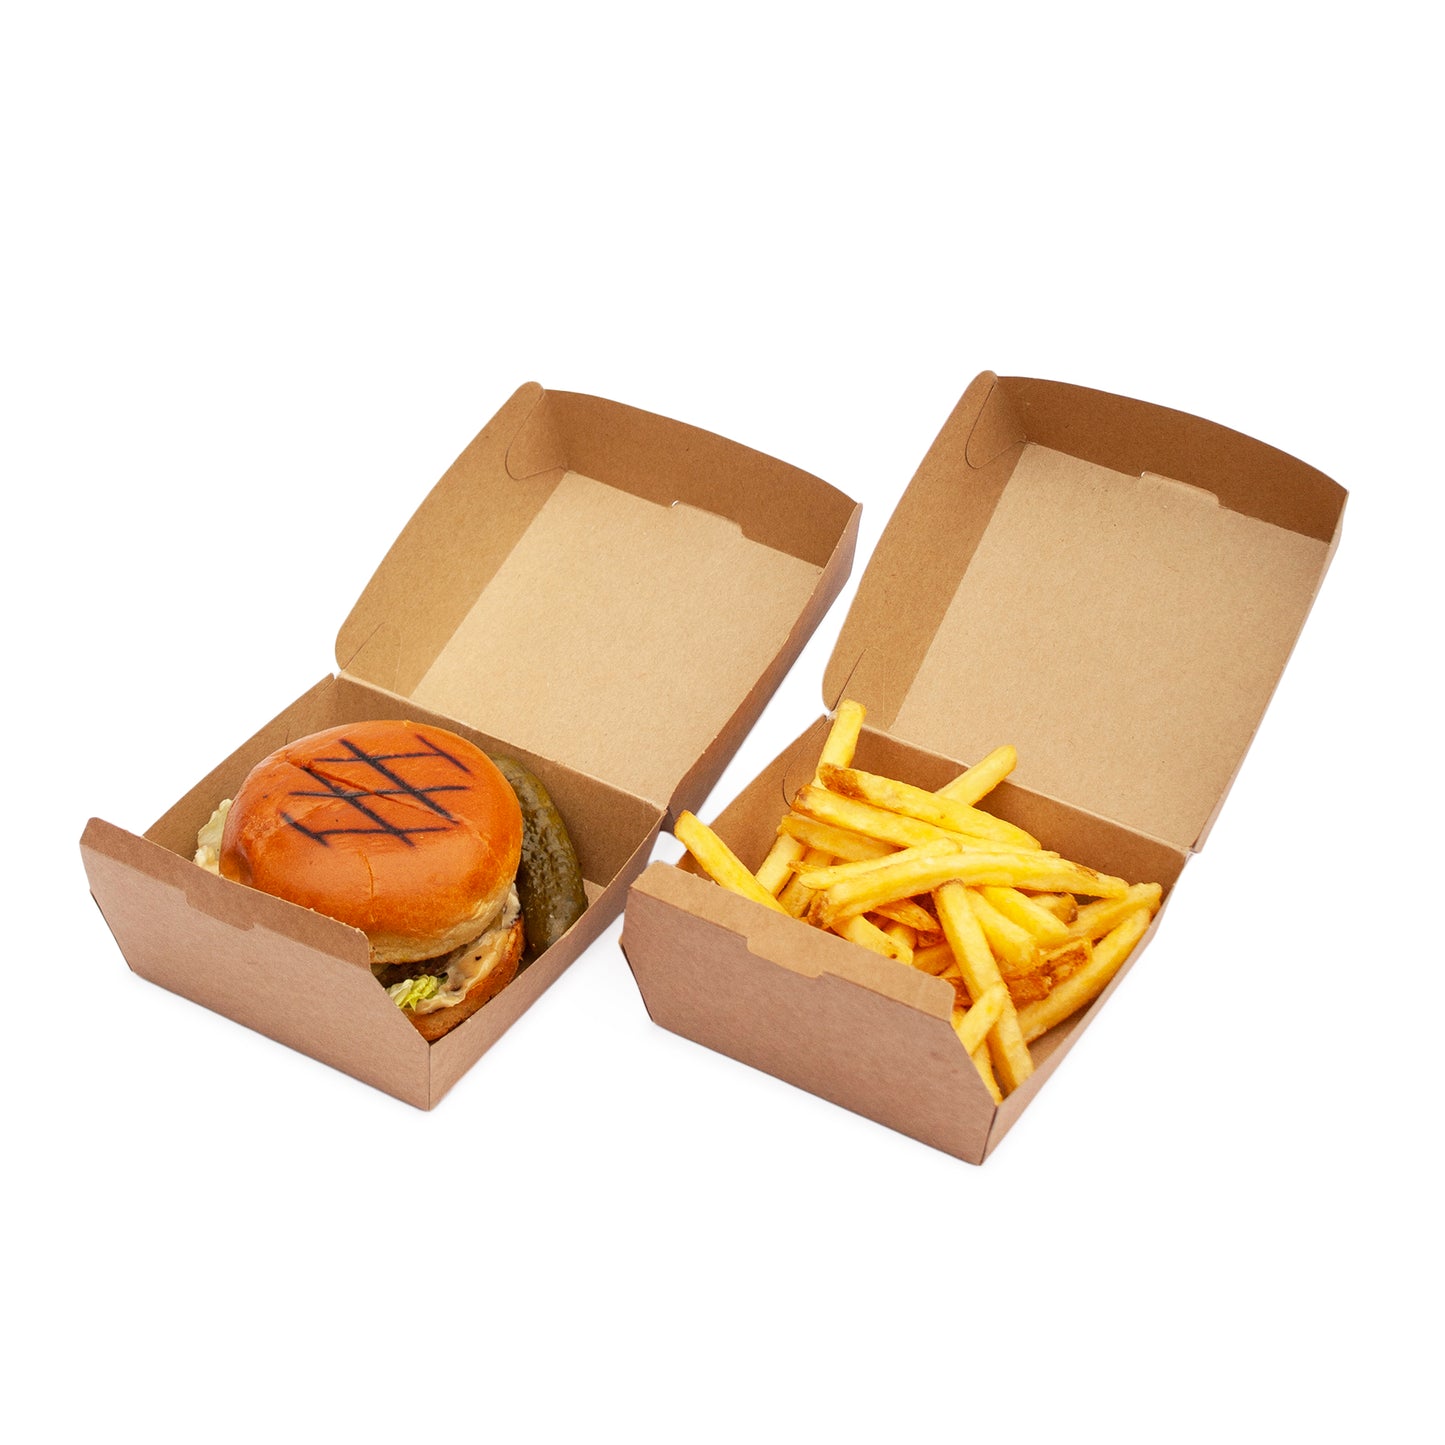 Burger Box Delivery packaging Kraft Burger box 600 units